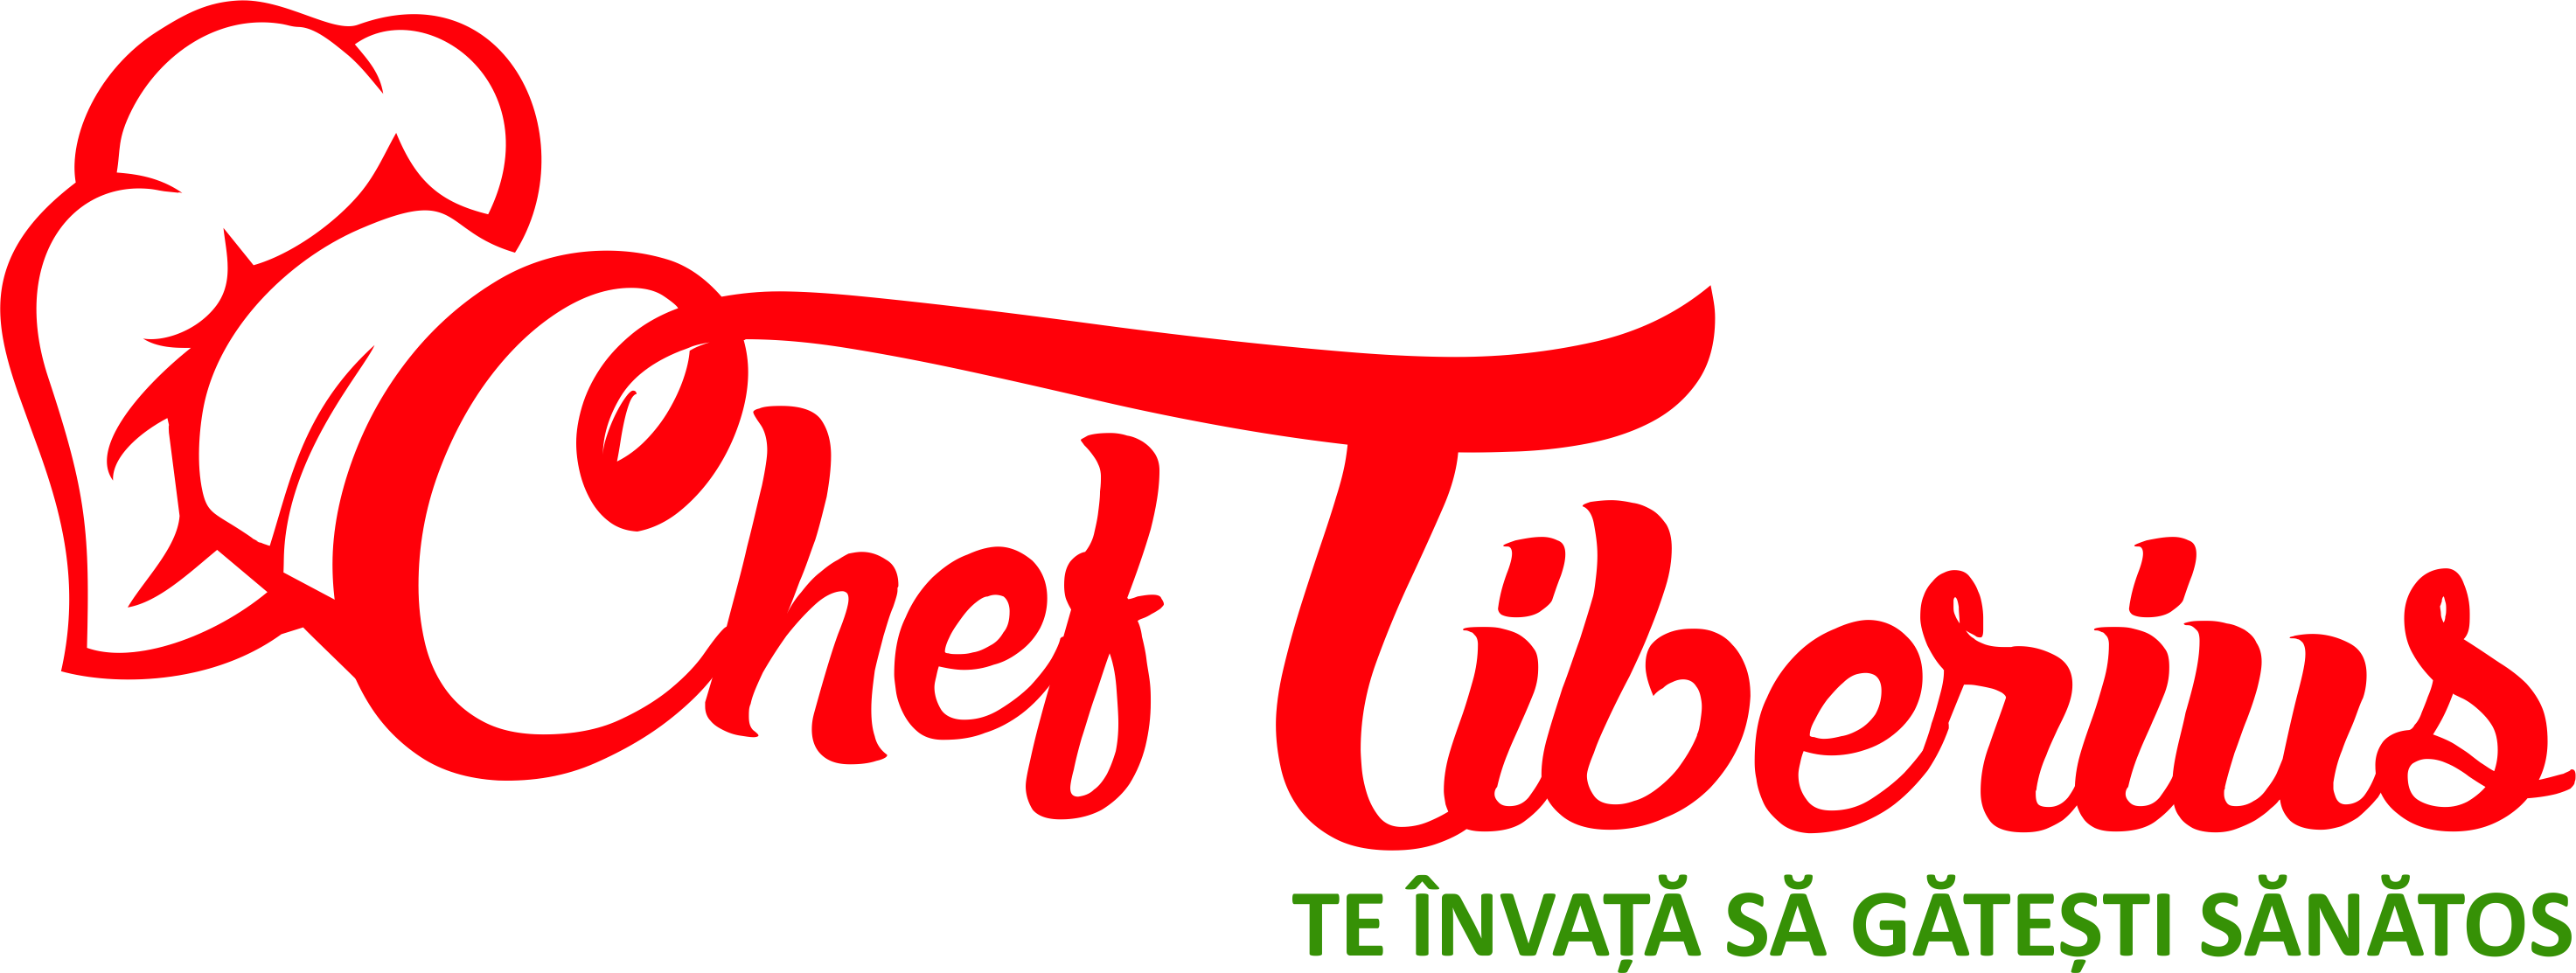 Chef tiberius Rgb